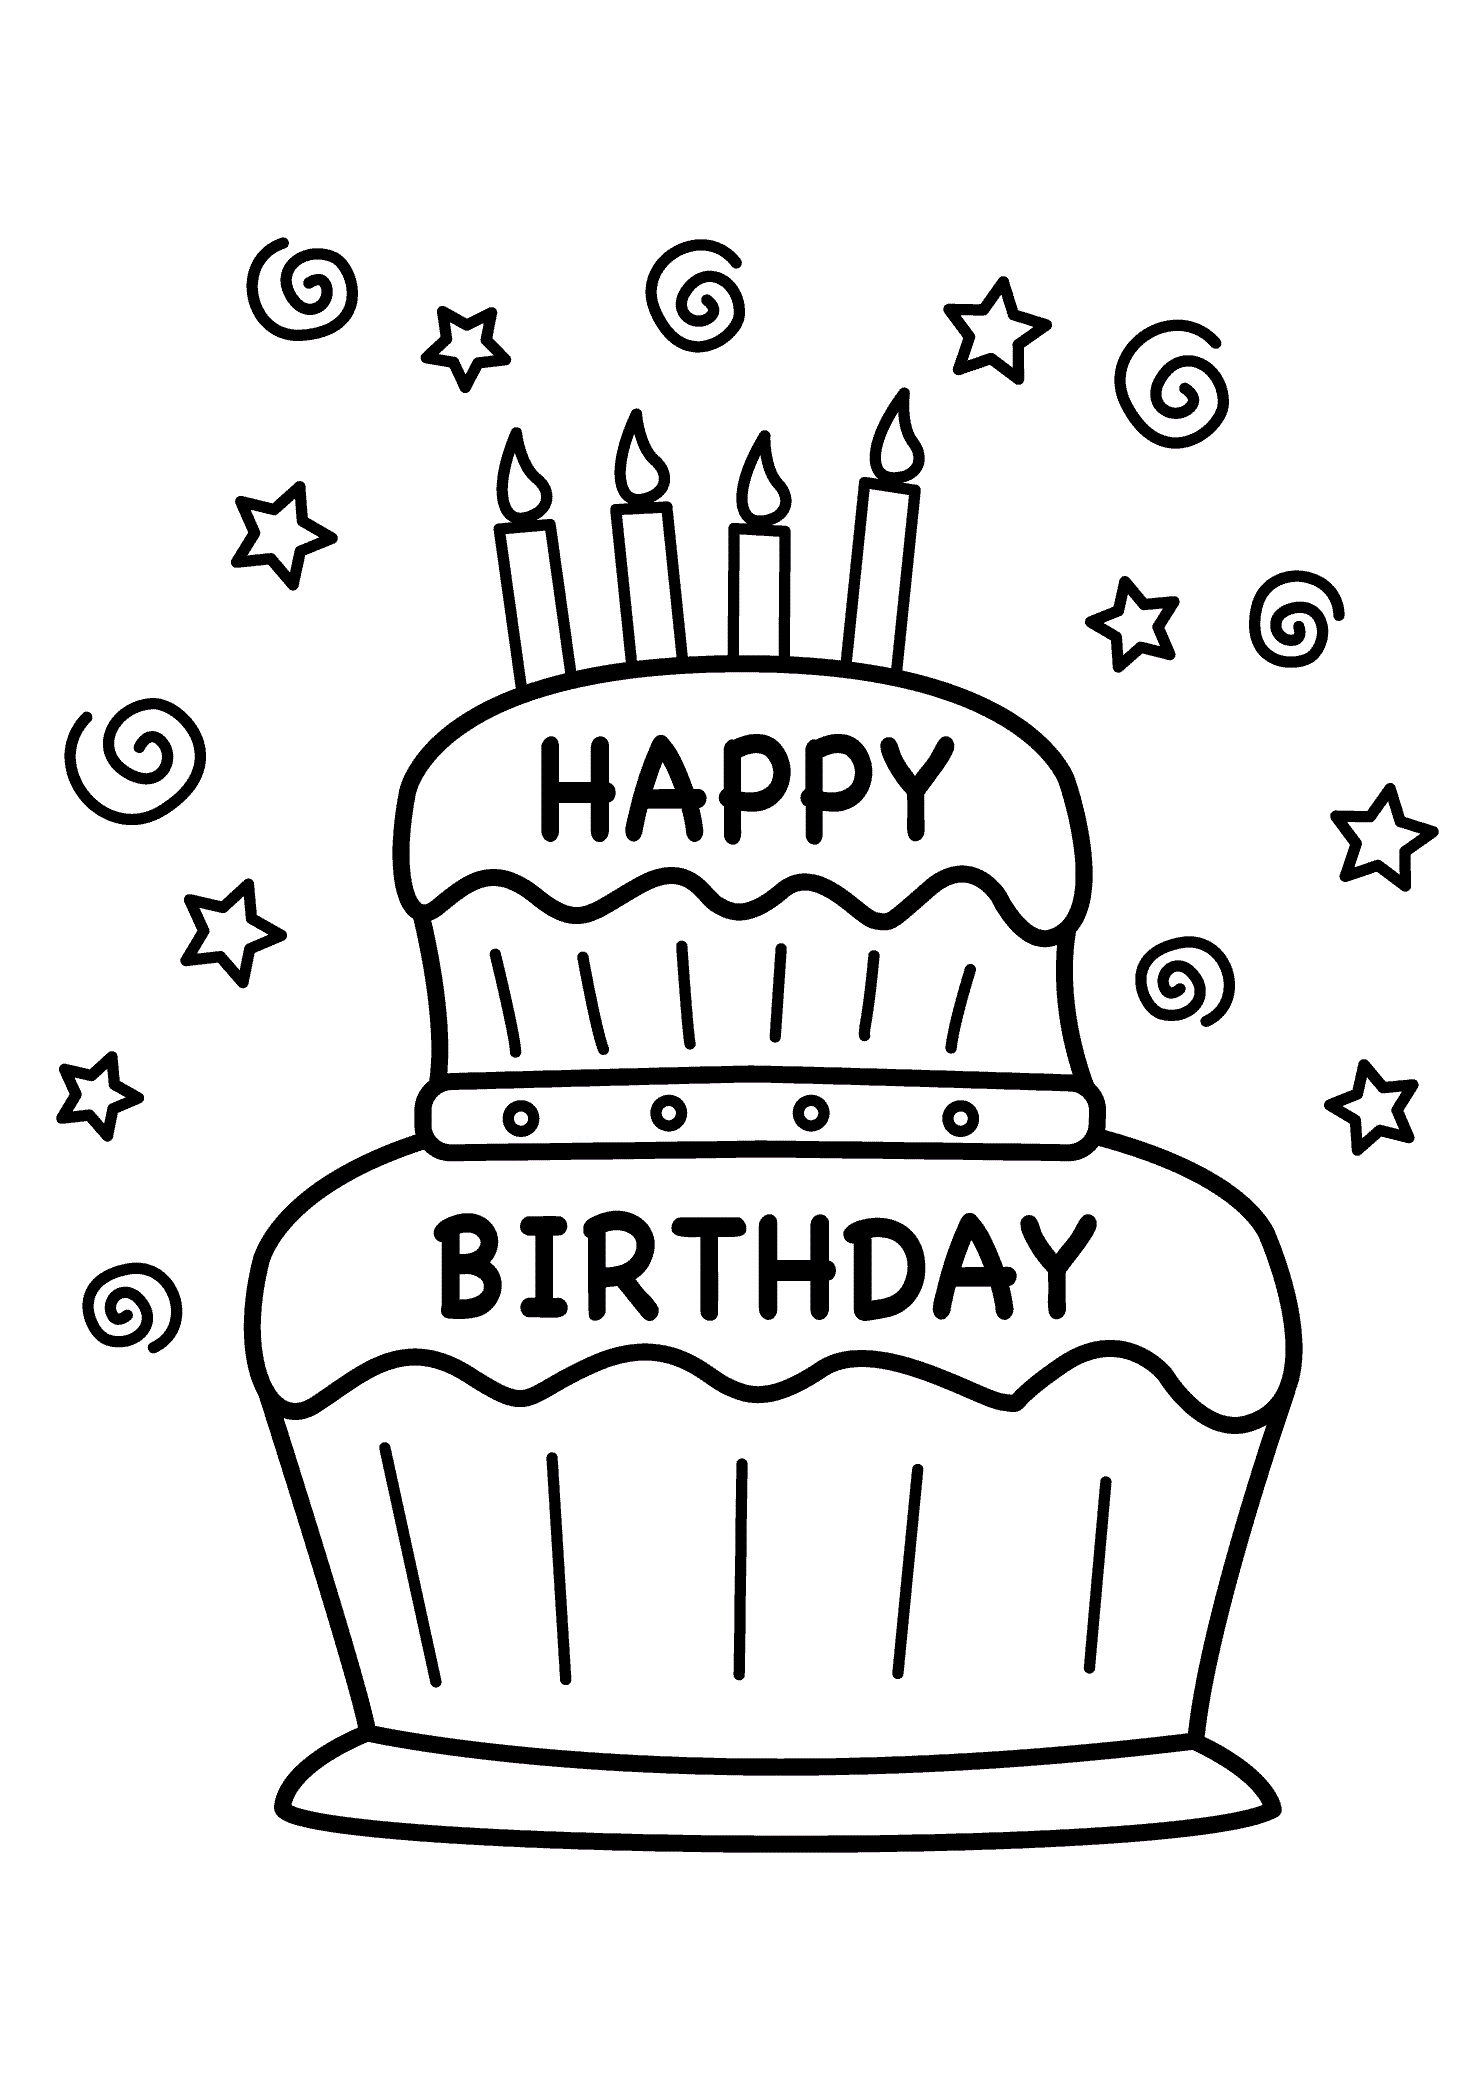 Nice Birthday Cake For You